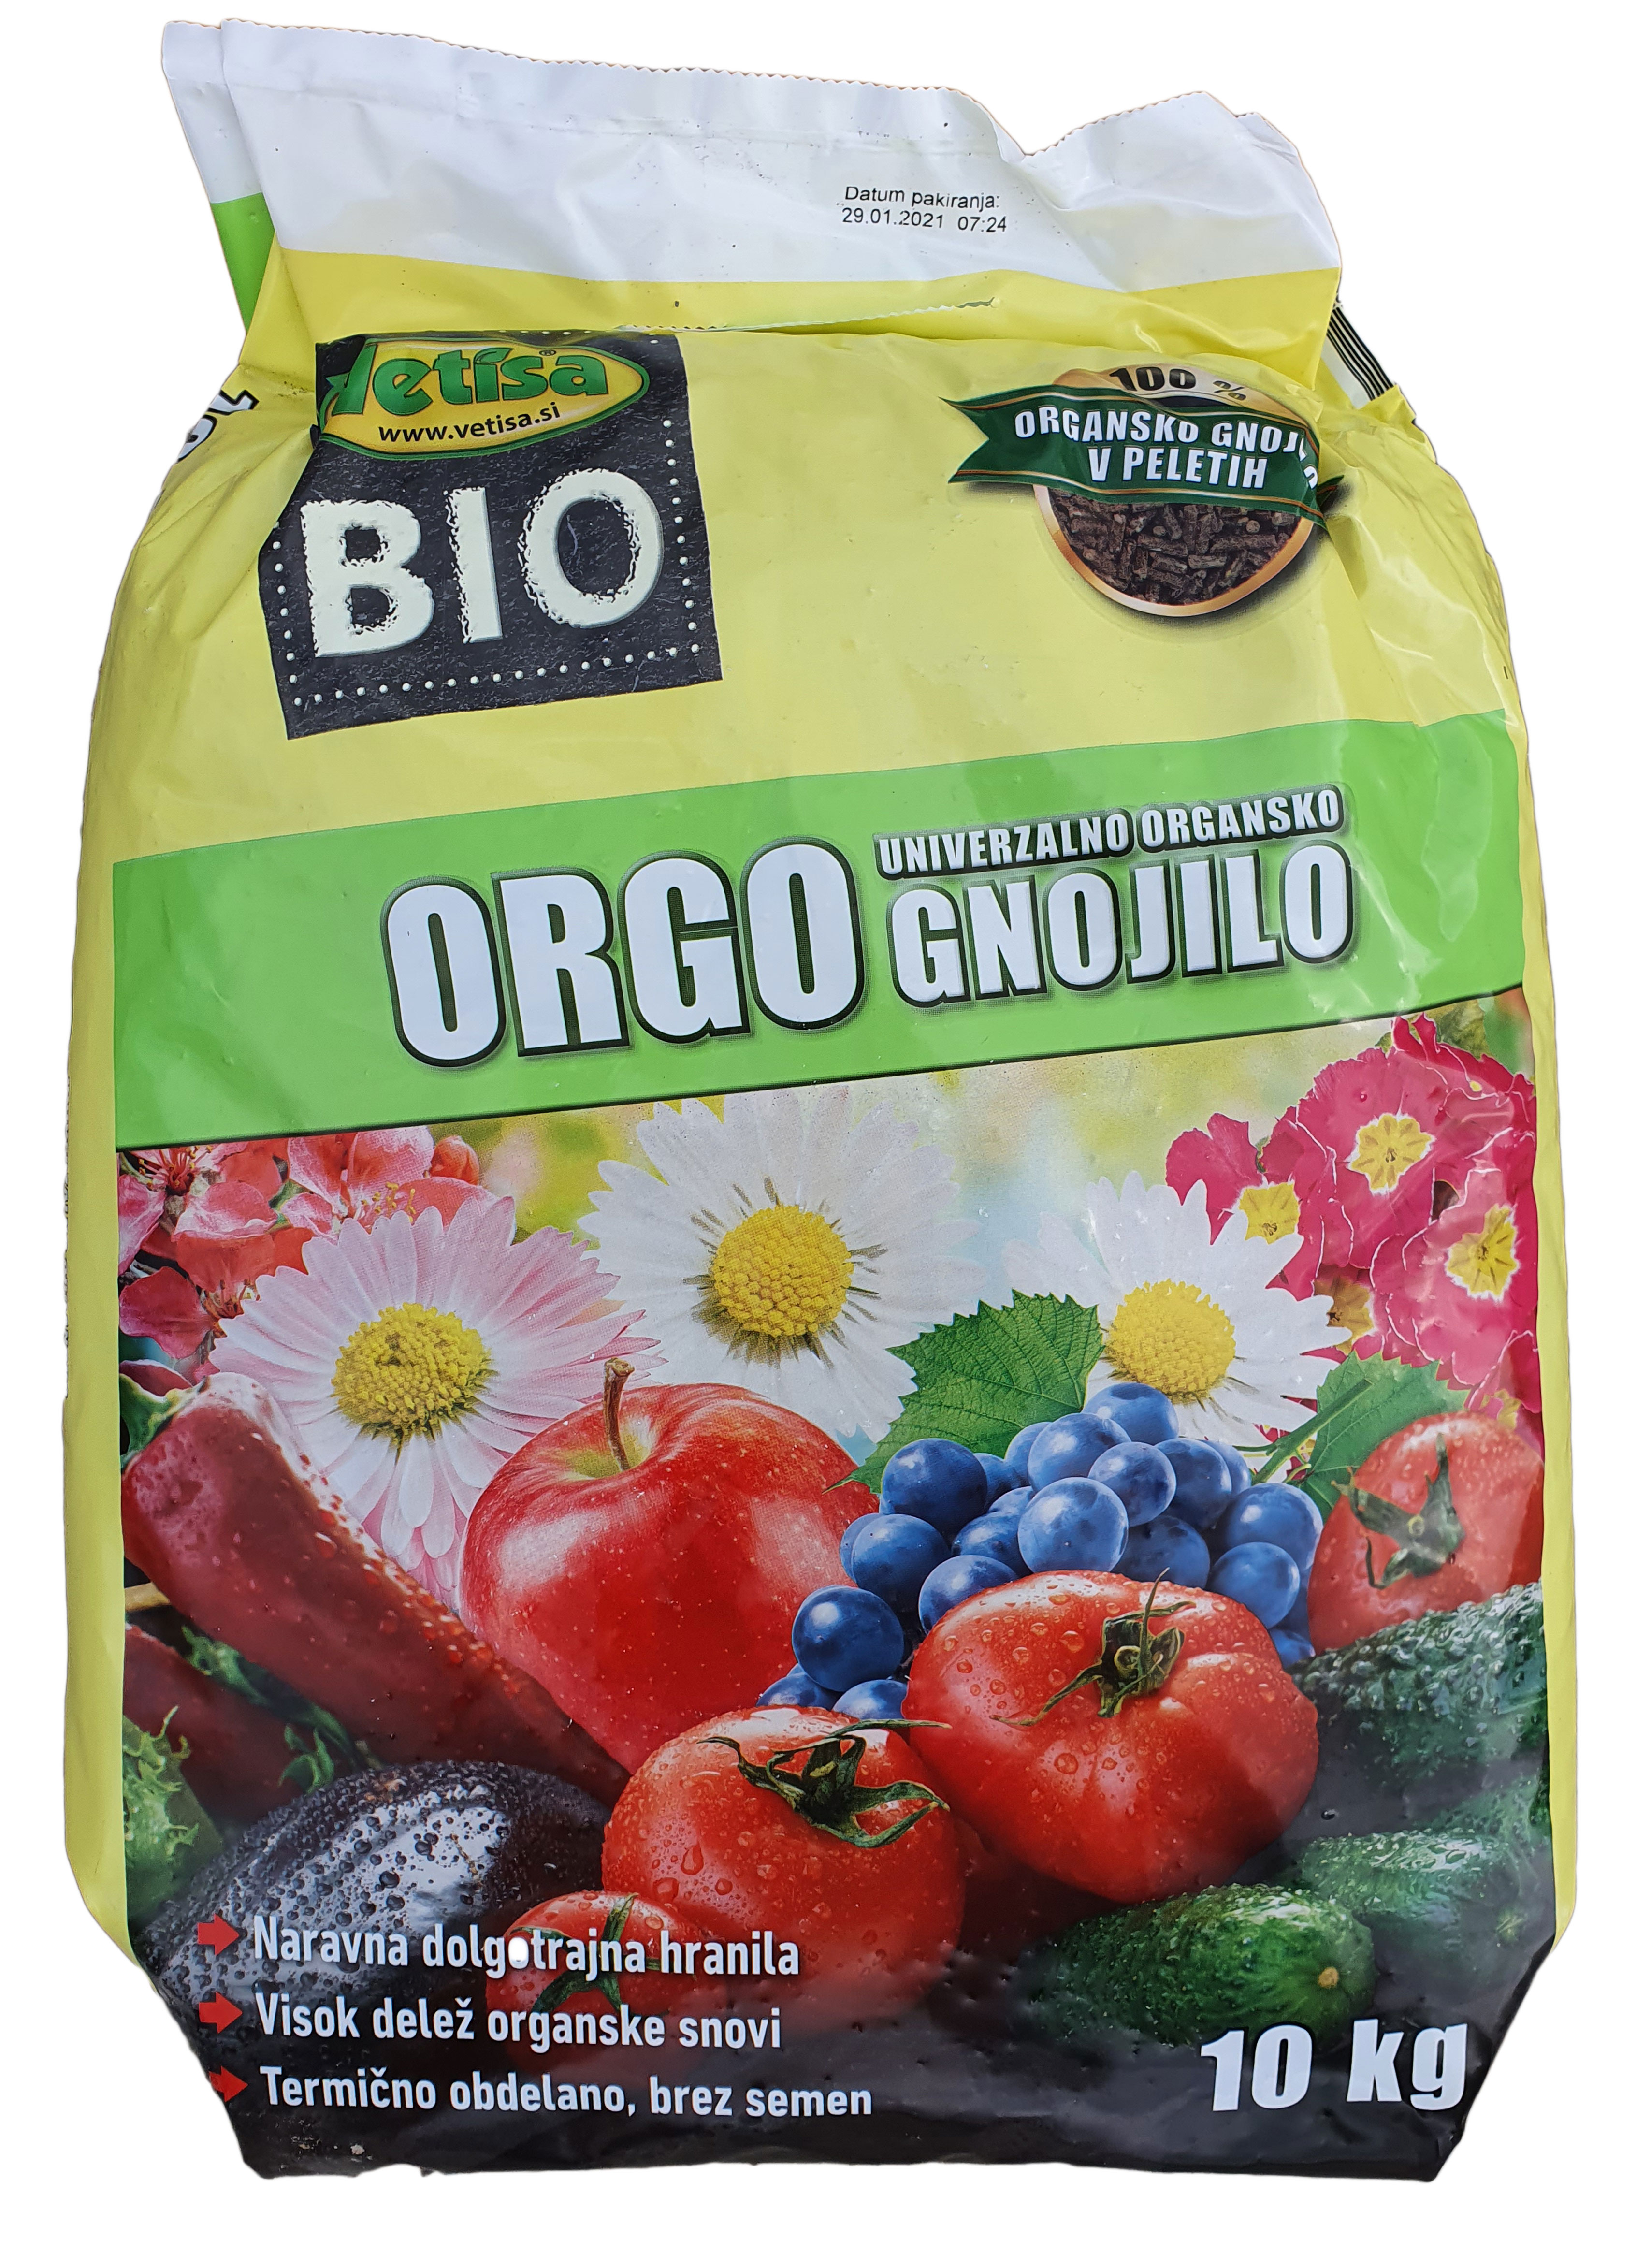 VETISA-ORGO – prirodno organsko profesionalno gnojivo